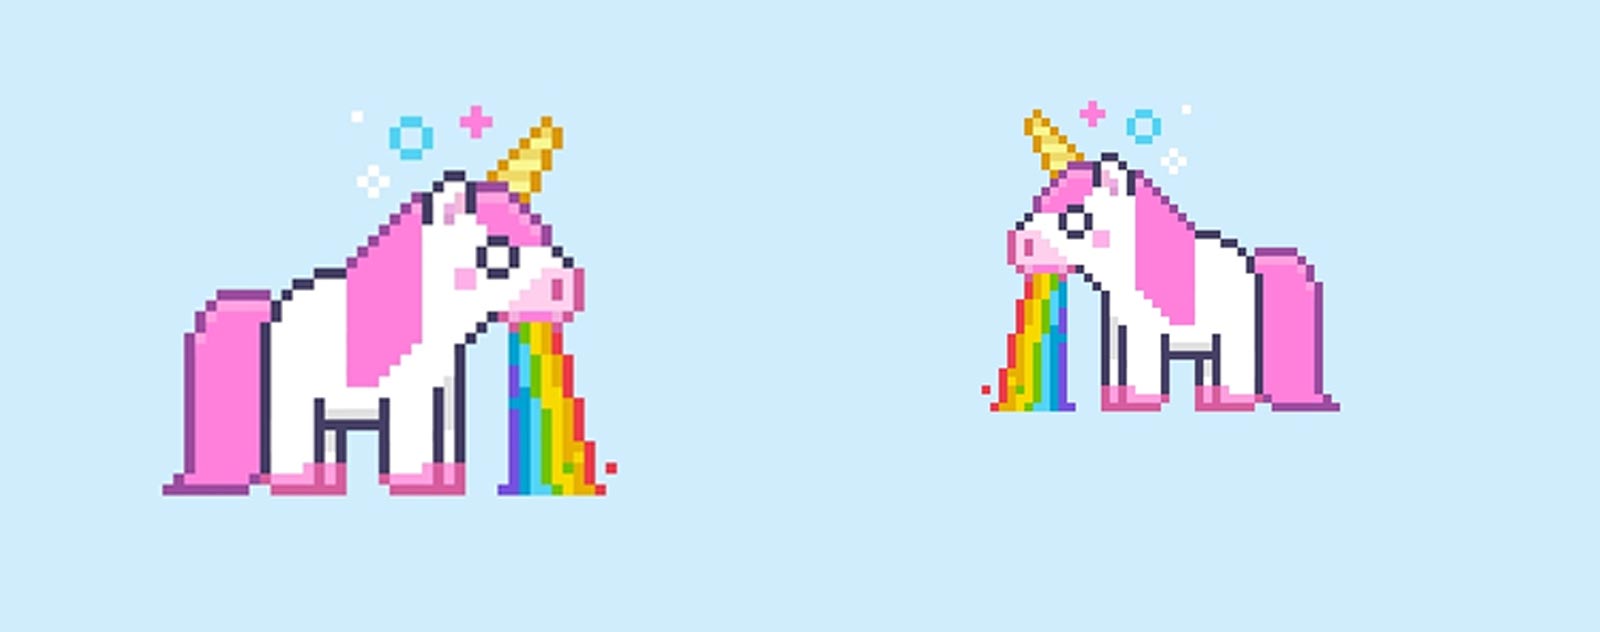 pixel-art-unicorn-pink-and-white